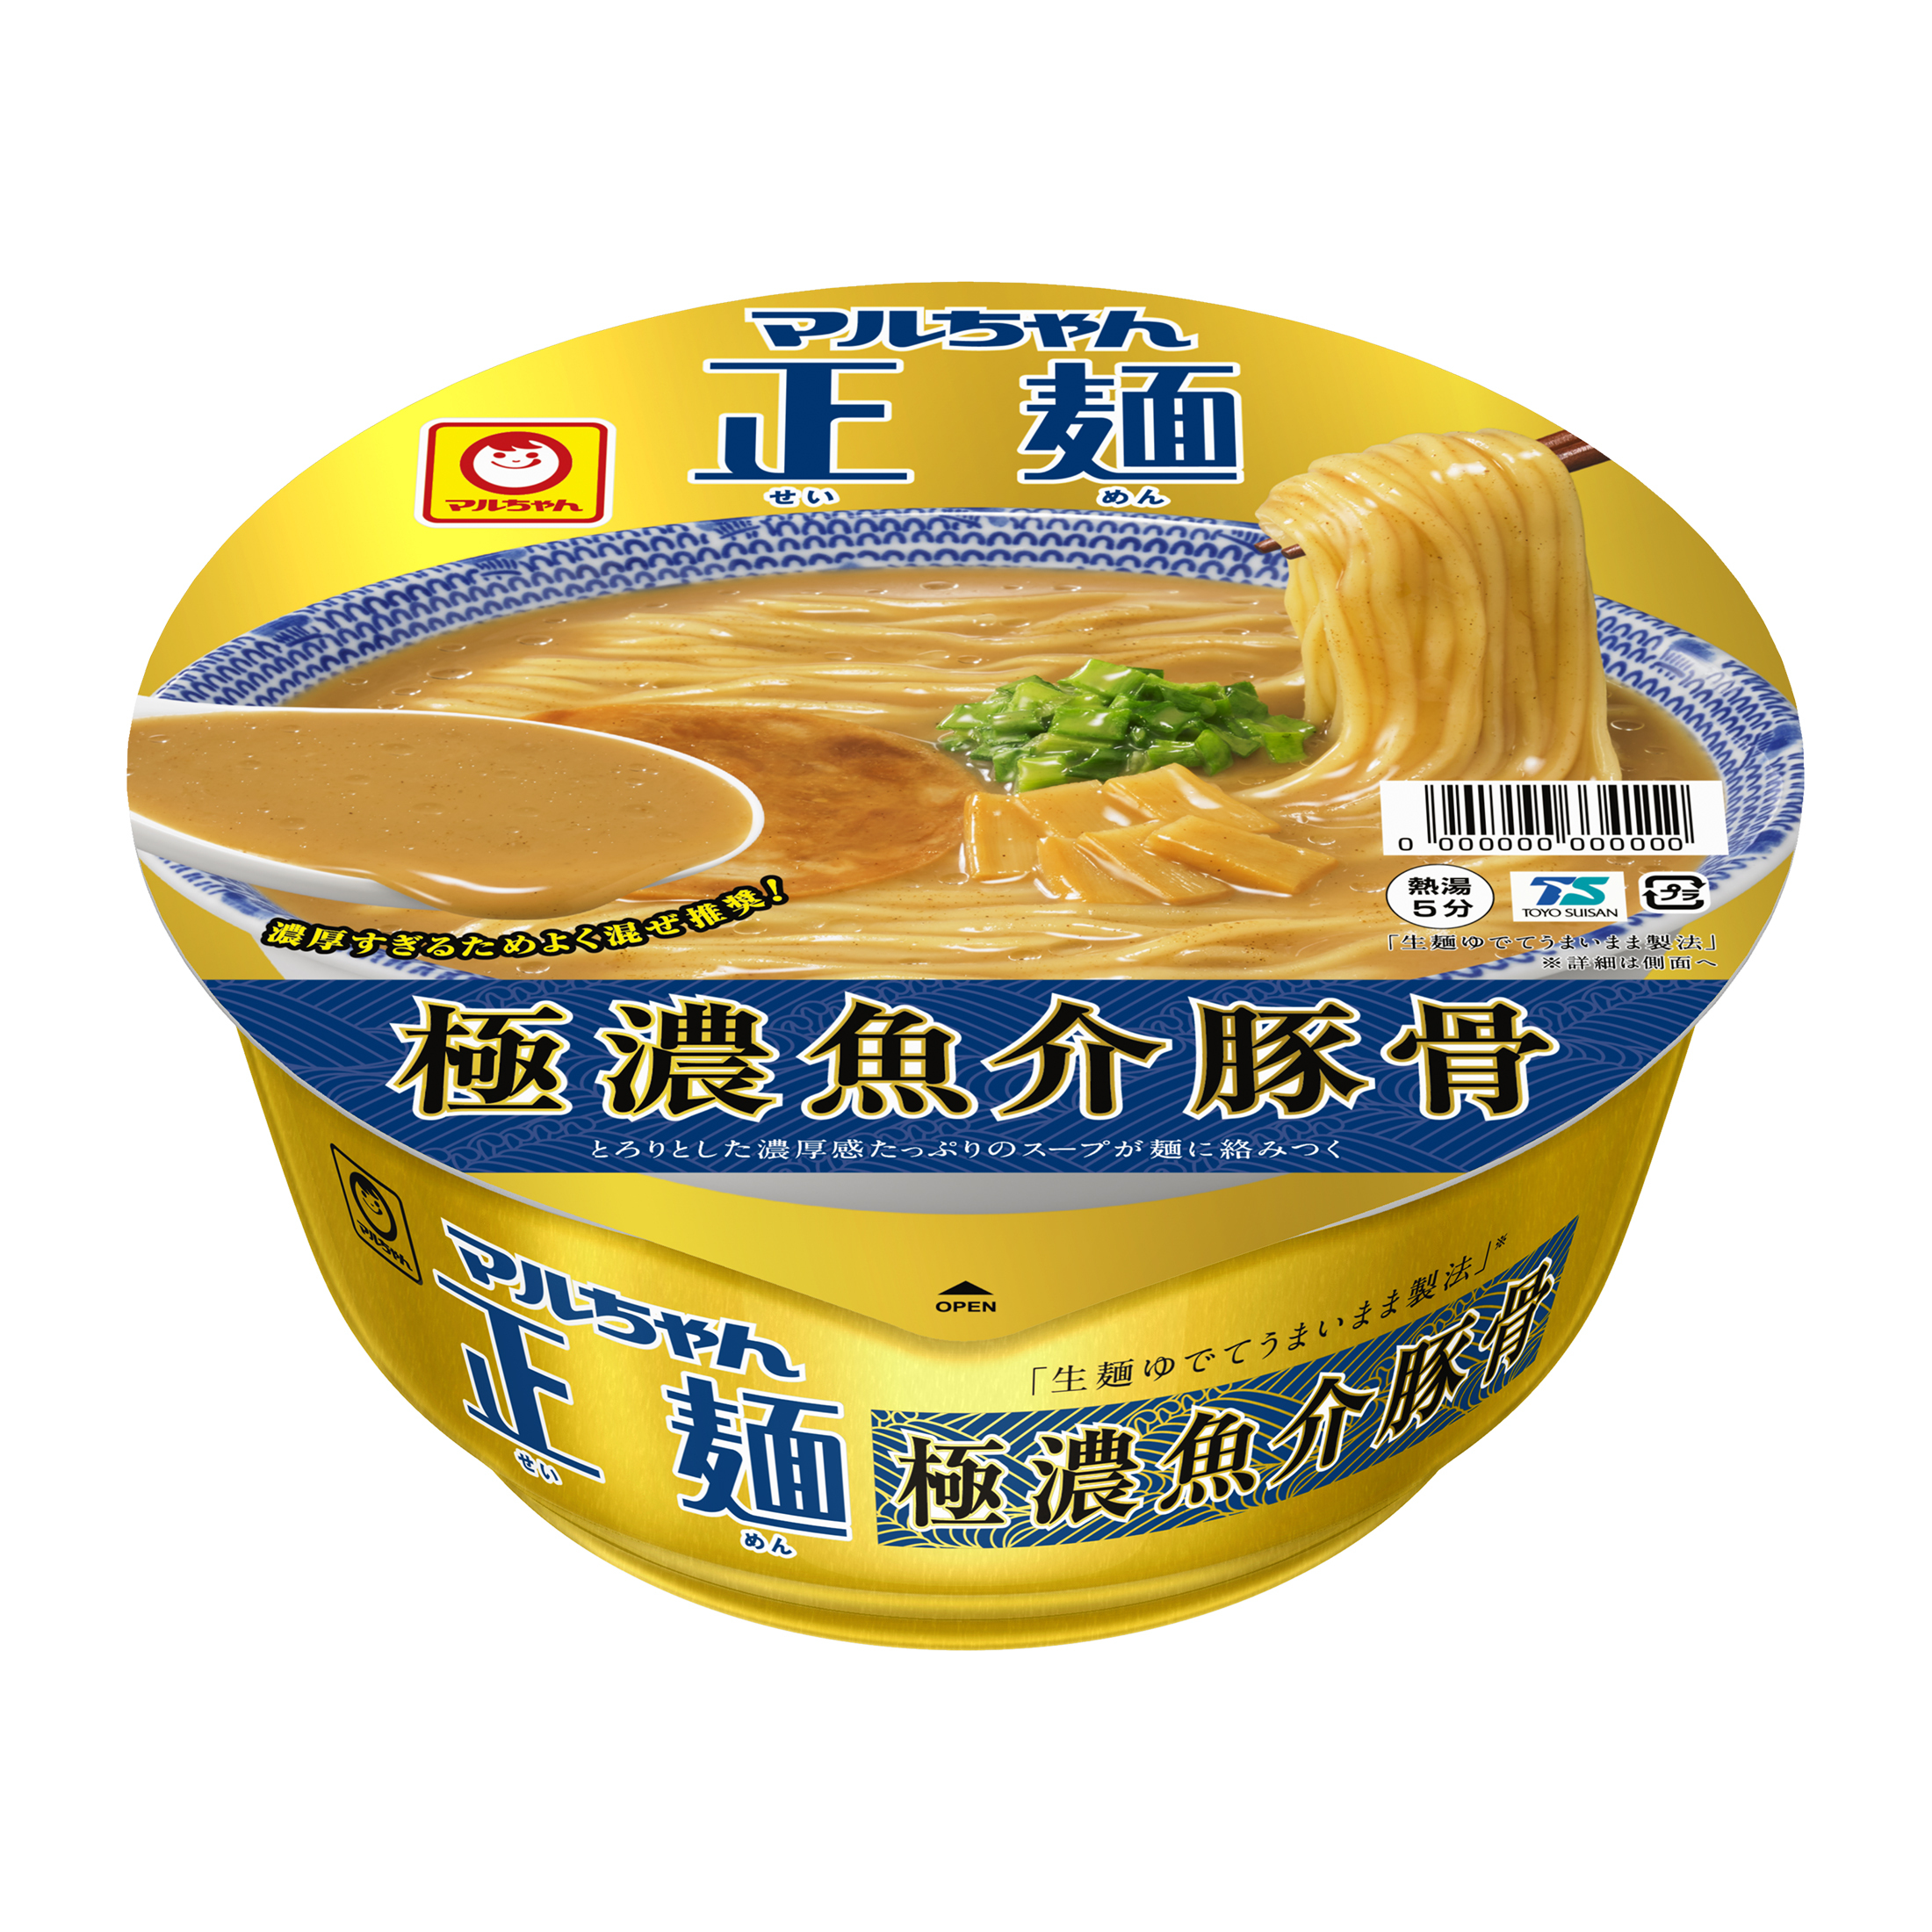 ただの濃厚ではない 極 濃厚スープ マルちゃん正麺 カップ 極濃魚介豚骨 21年10月4日 月 新発売 東洋水産株式会社のプレスリリース